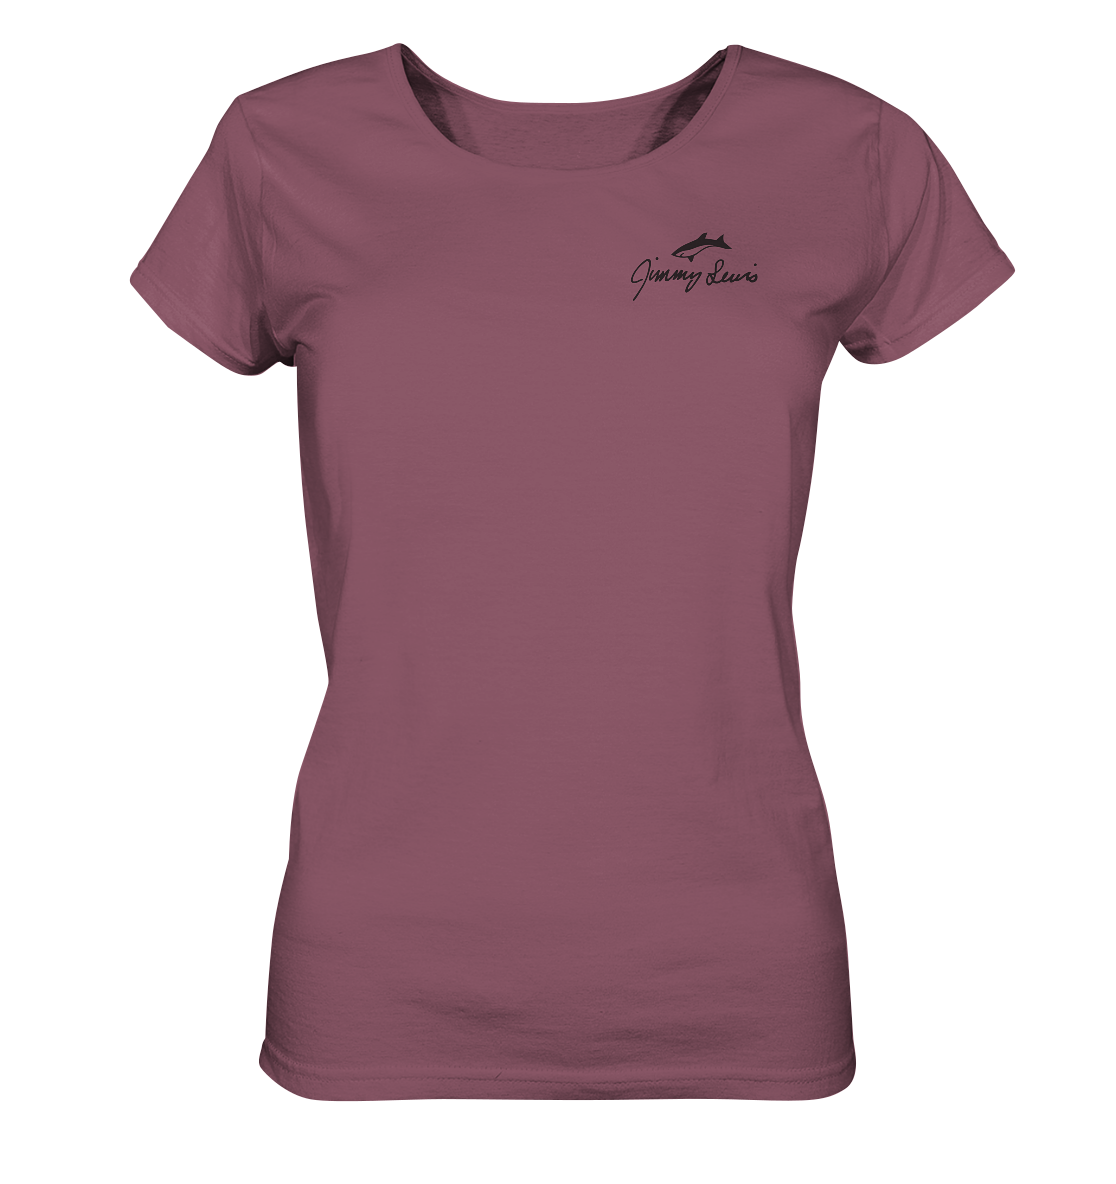 Jimmy Lewis Heritage Series - since 1968 - Ladies Organic Shirt - Ladies Organic Shirt